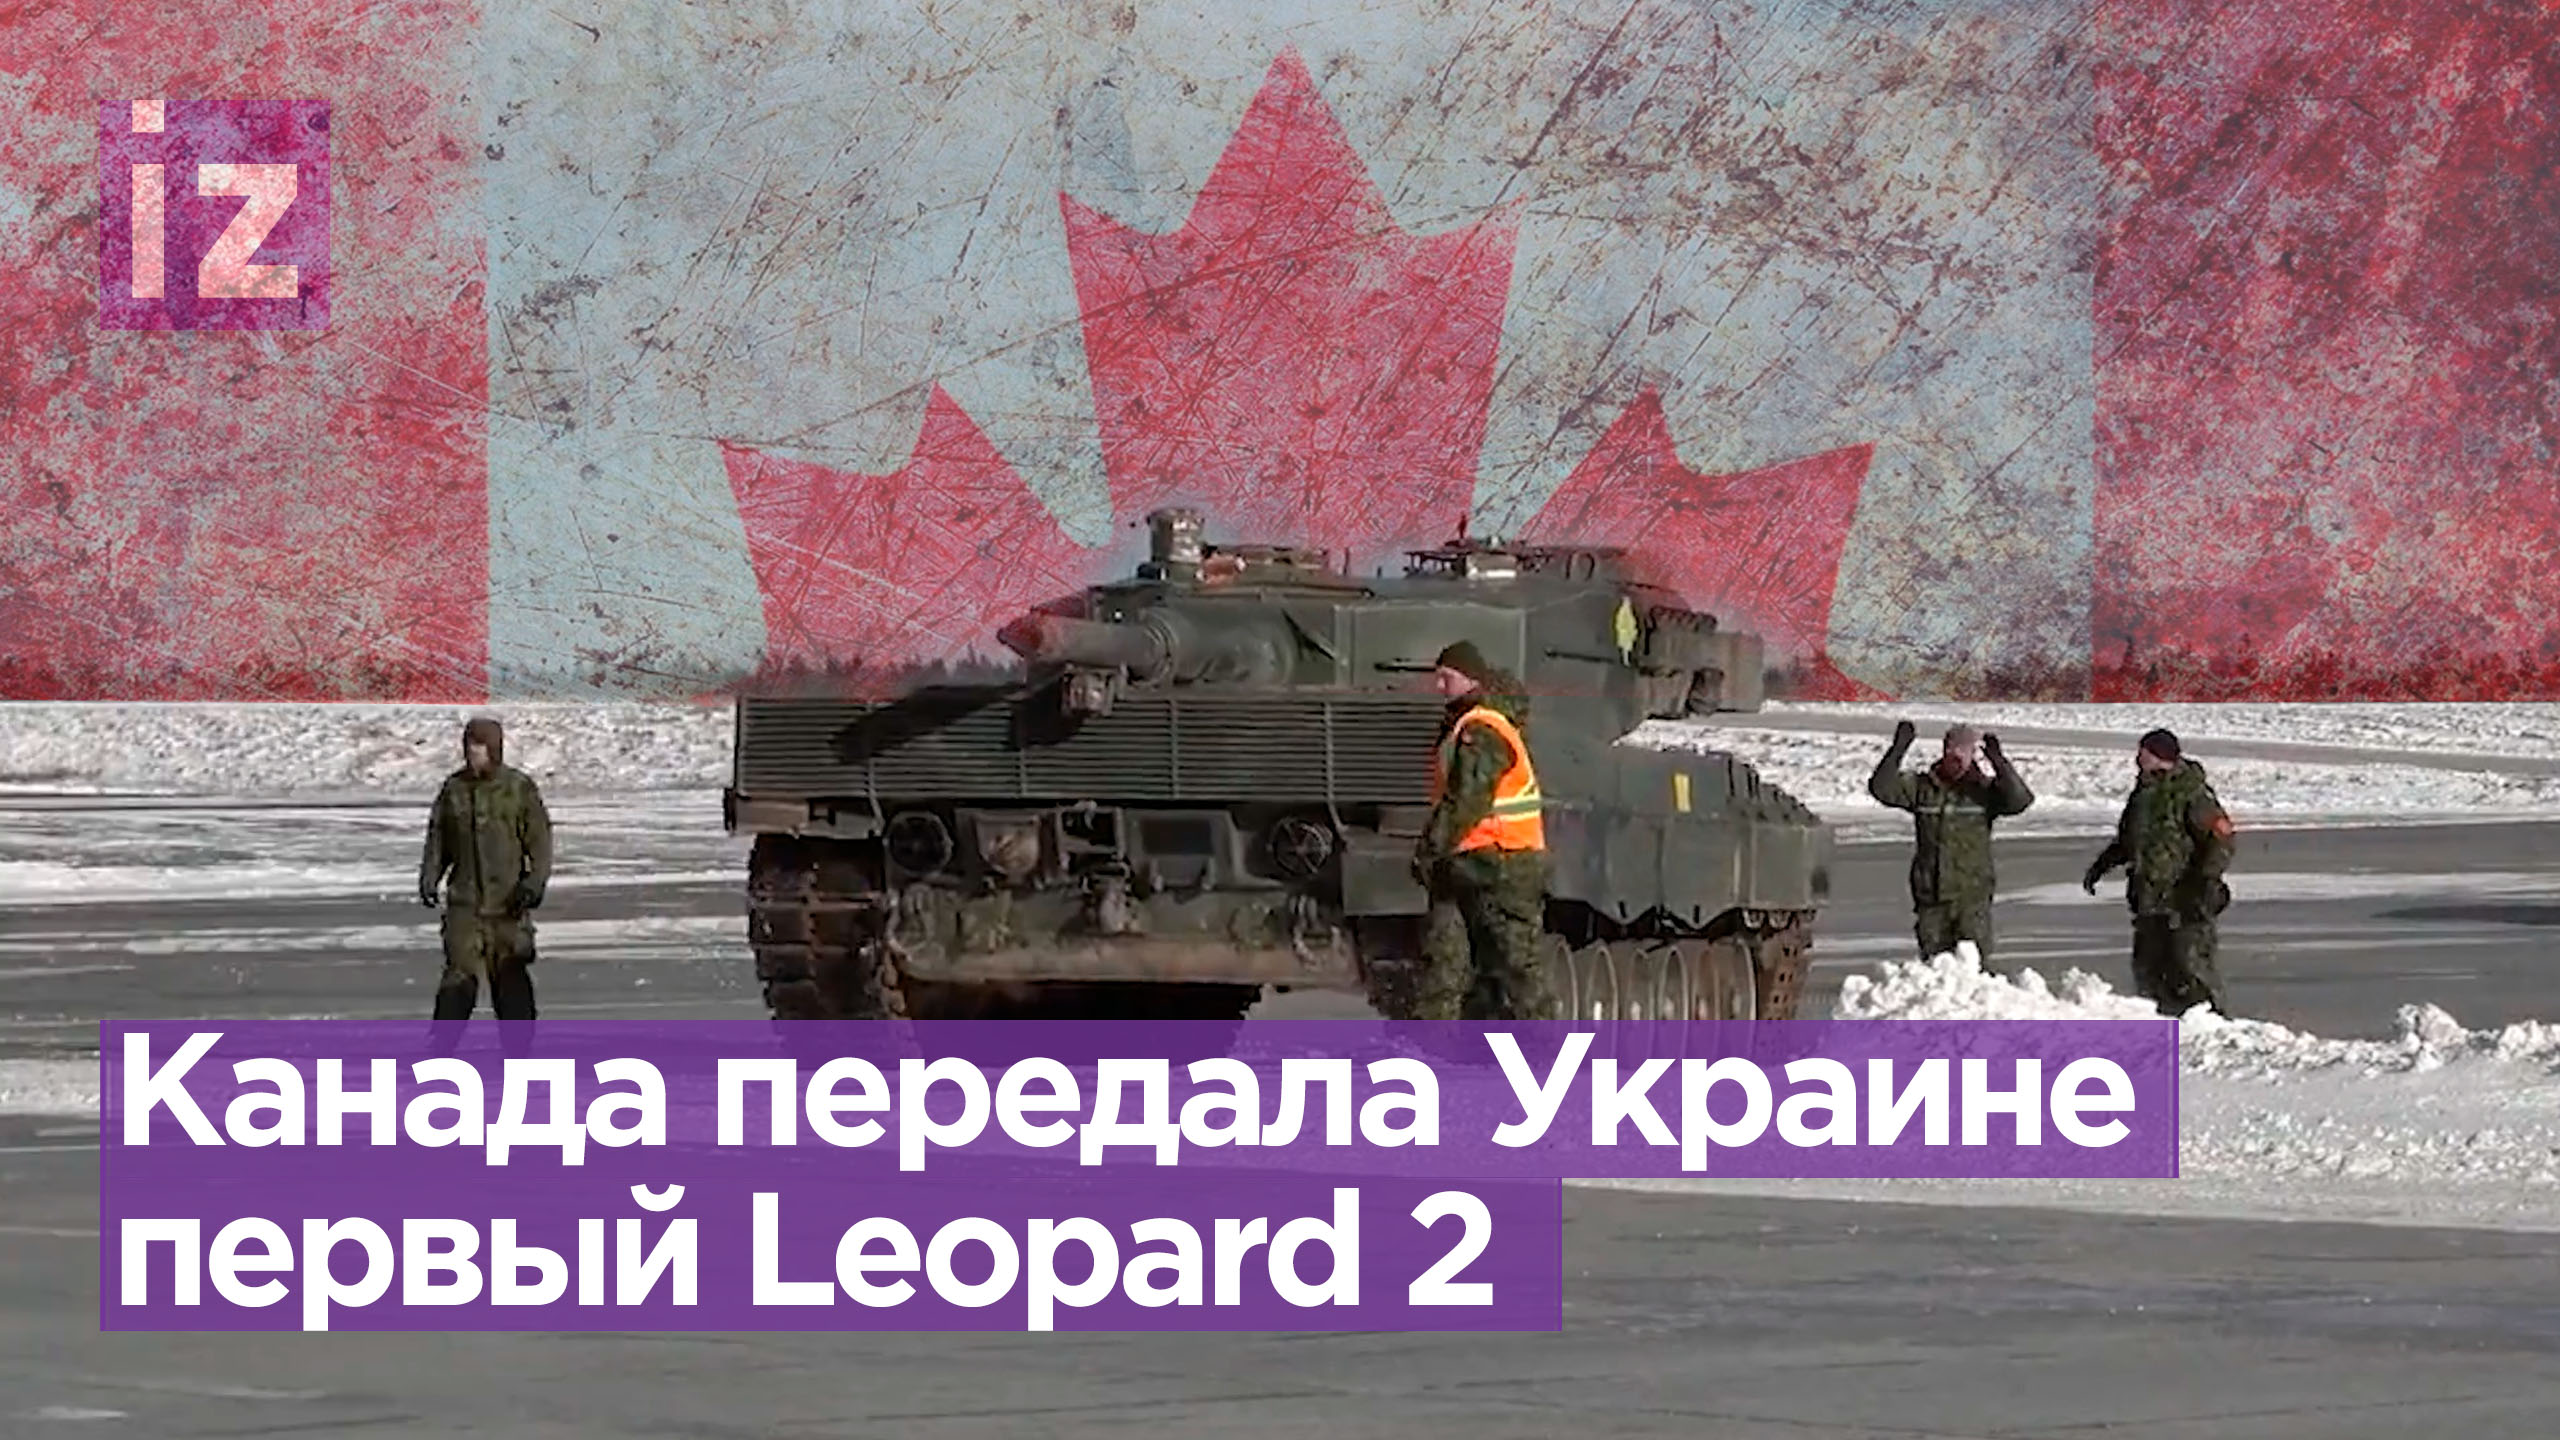 Канада отправила на Украину первый танк Leopard 2 / Известия